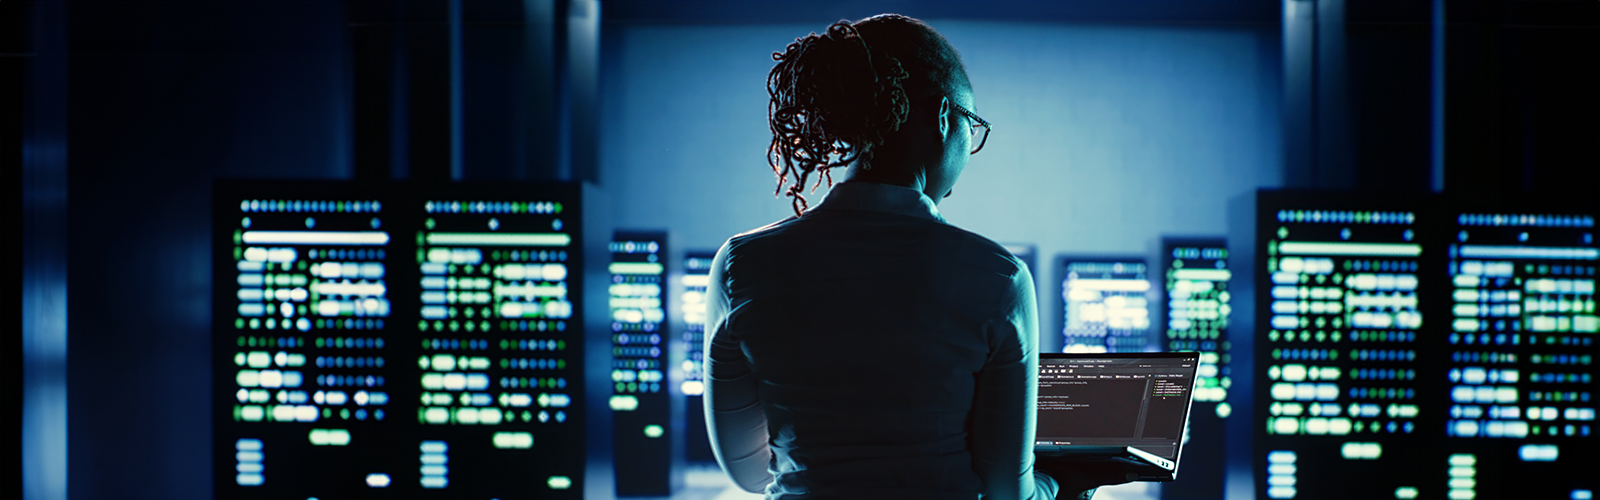 Kvinna i blå skjorta tittar på sin bärbara dator på ett skrivbord